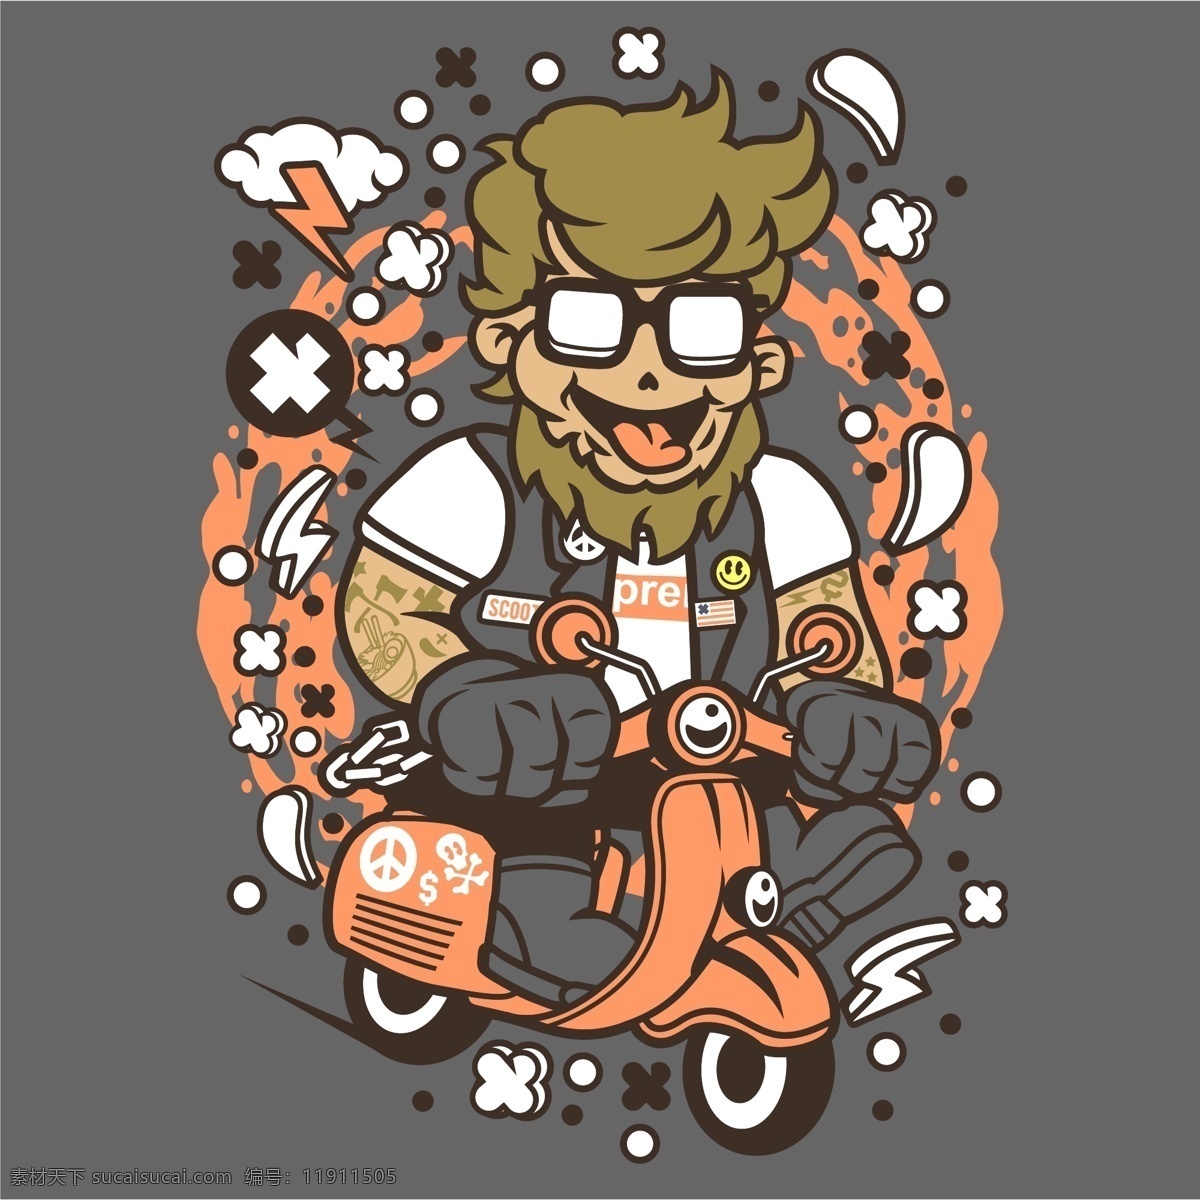 骑 摩托车 的卡 通 动漫 人物 形象 矢量 骑摩托车 卡通动漫人物 卡通人物形象 骑摩托车矢量 飞奔的摩托车 动漫人物 卡通形象 动画片 游戏人物角色 可爱卡通形象 卡通动漫 动漫动画